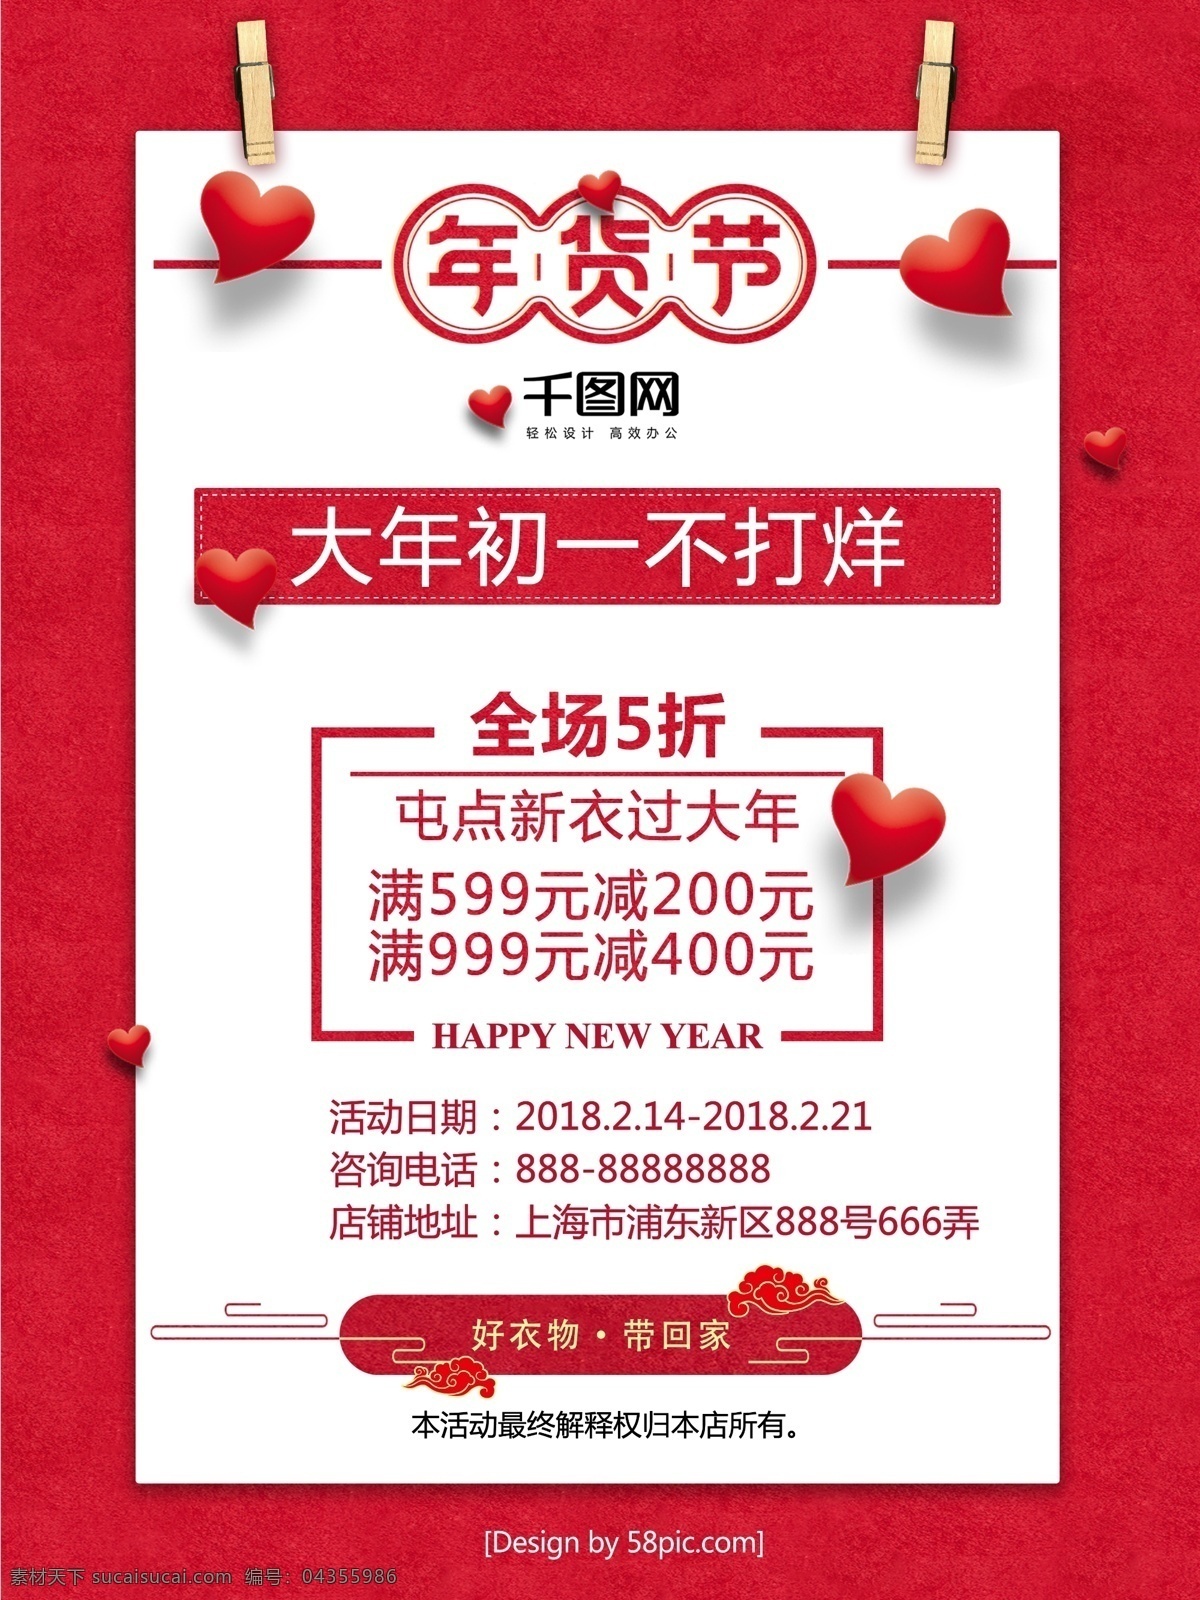 2018 春节 节日 商场促销 海报 促销 红色 红色背景 活动 年货 商业海报 特卖 喜庆 心